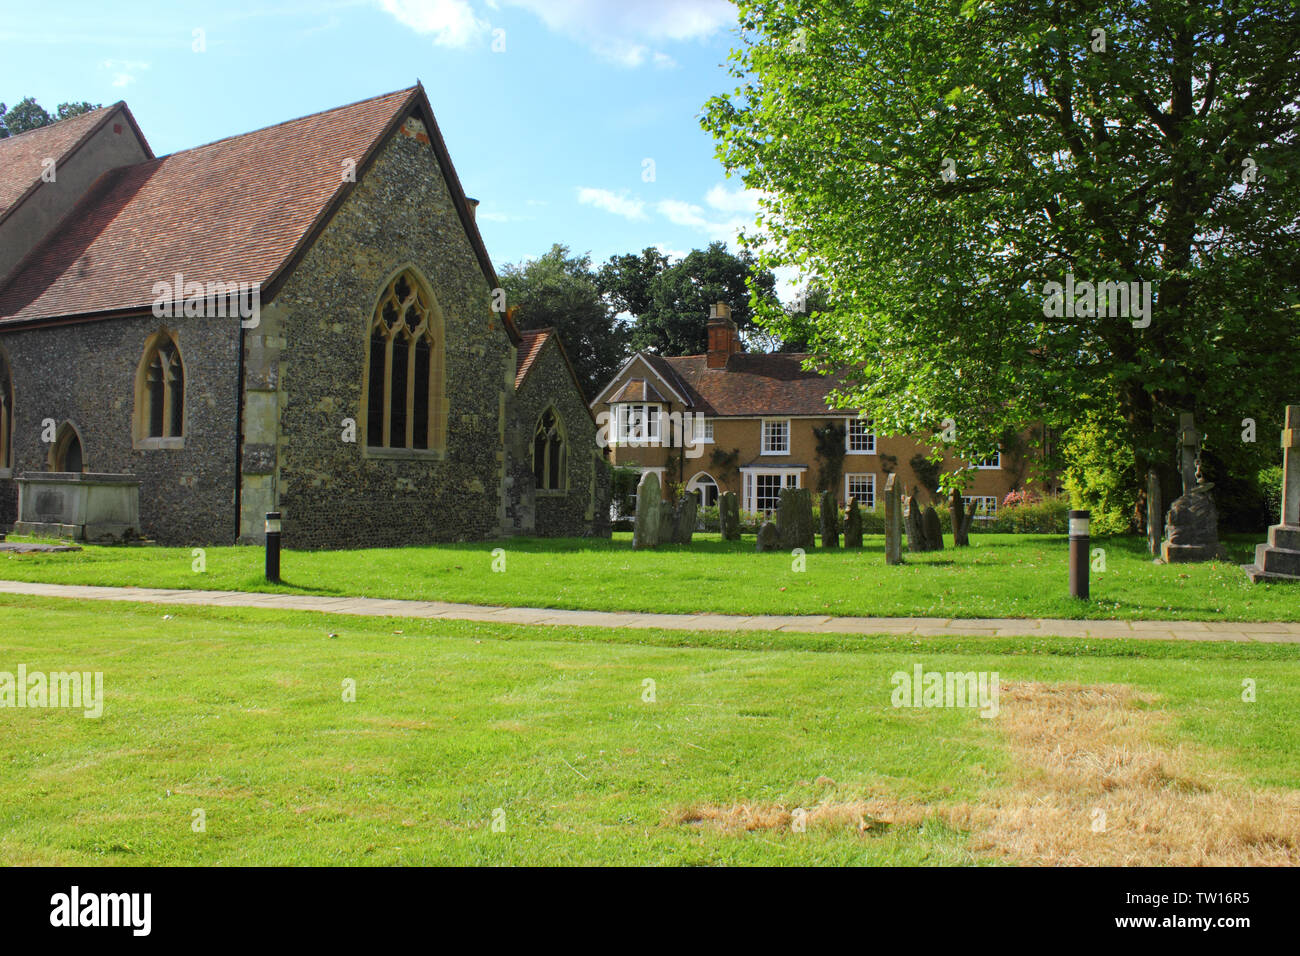 North Mymms Ort & Park, Hertfordshire, England - St. kann's, die Pfarrkirche und Friedhof Stockfoto